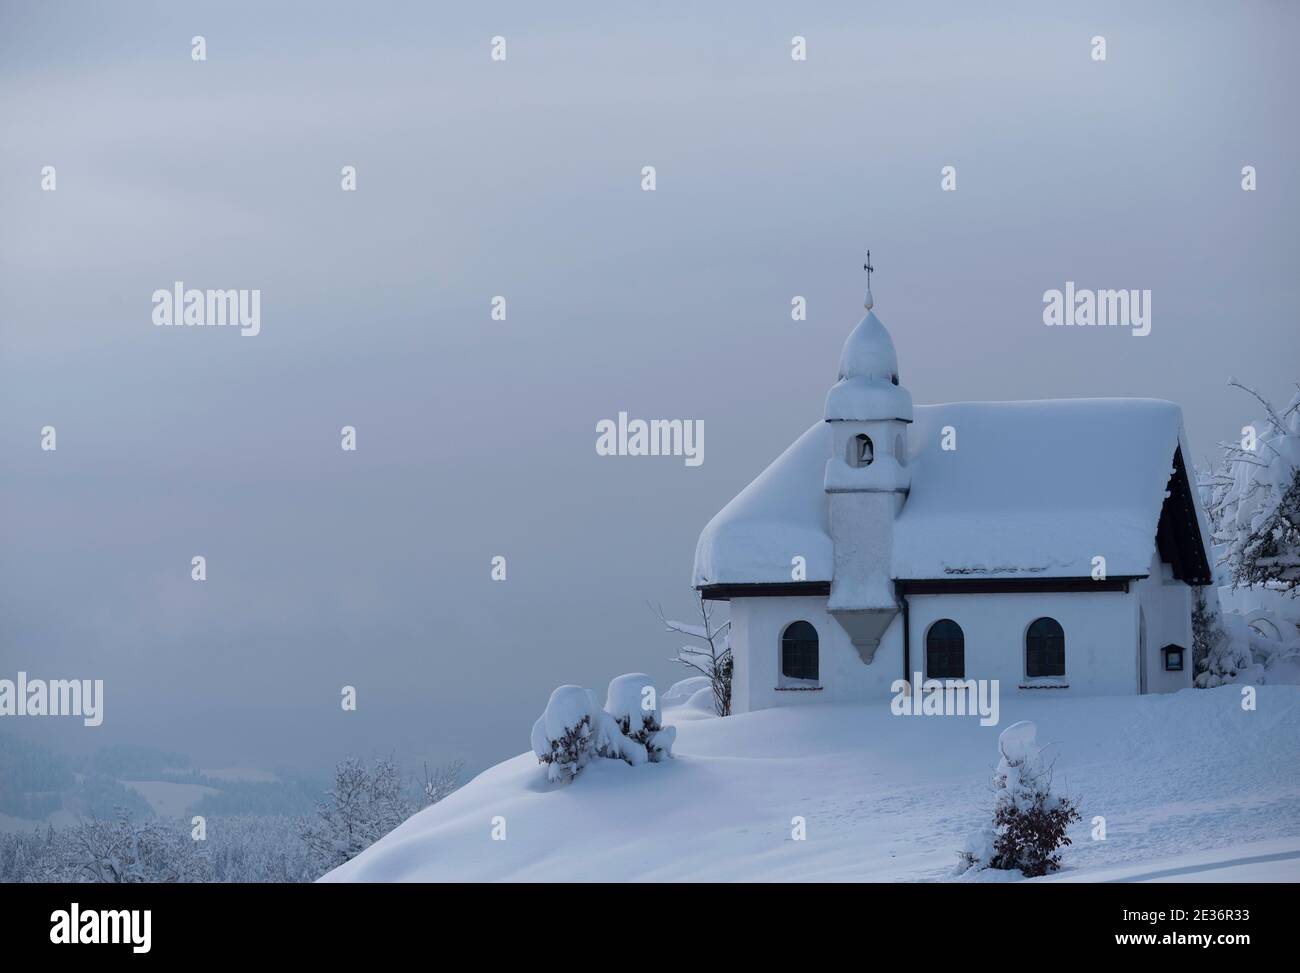 Deutschland, Scheidegg - 15. Januar 2019: Bayerische Kirche St. Hubertus Kapelle bedeckt mit Schnee an einem sonnigen Tag. Nahaufnahme mit einem bayrischen kleinen chu Stockfoto